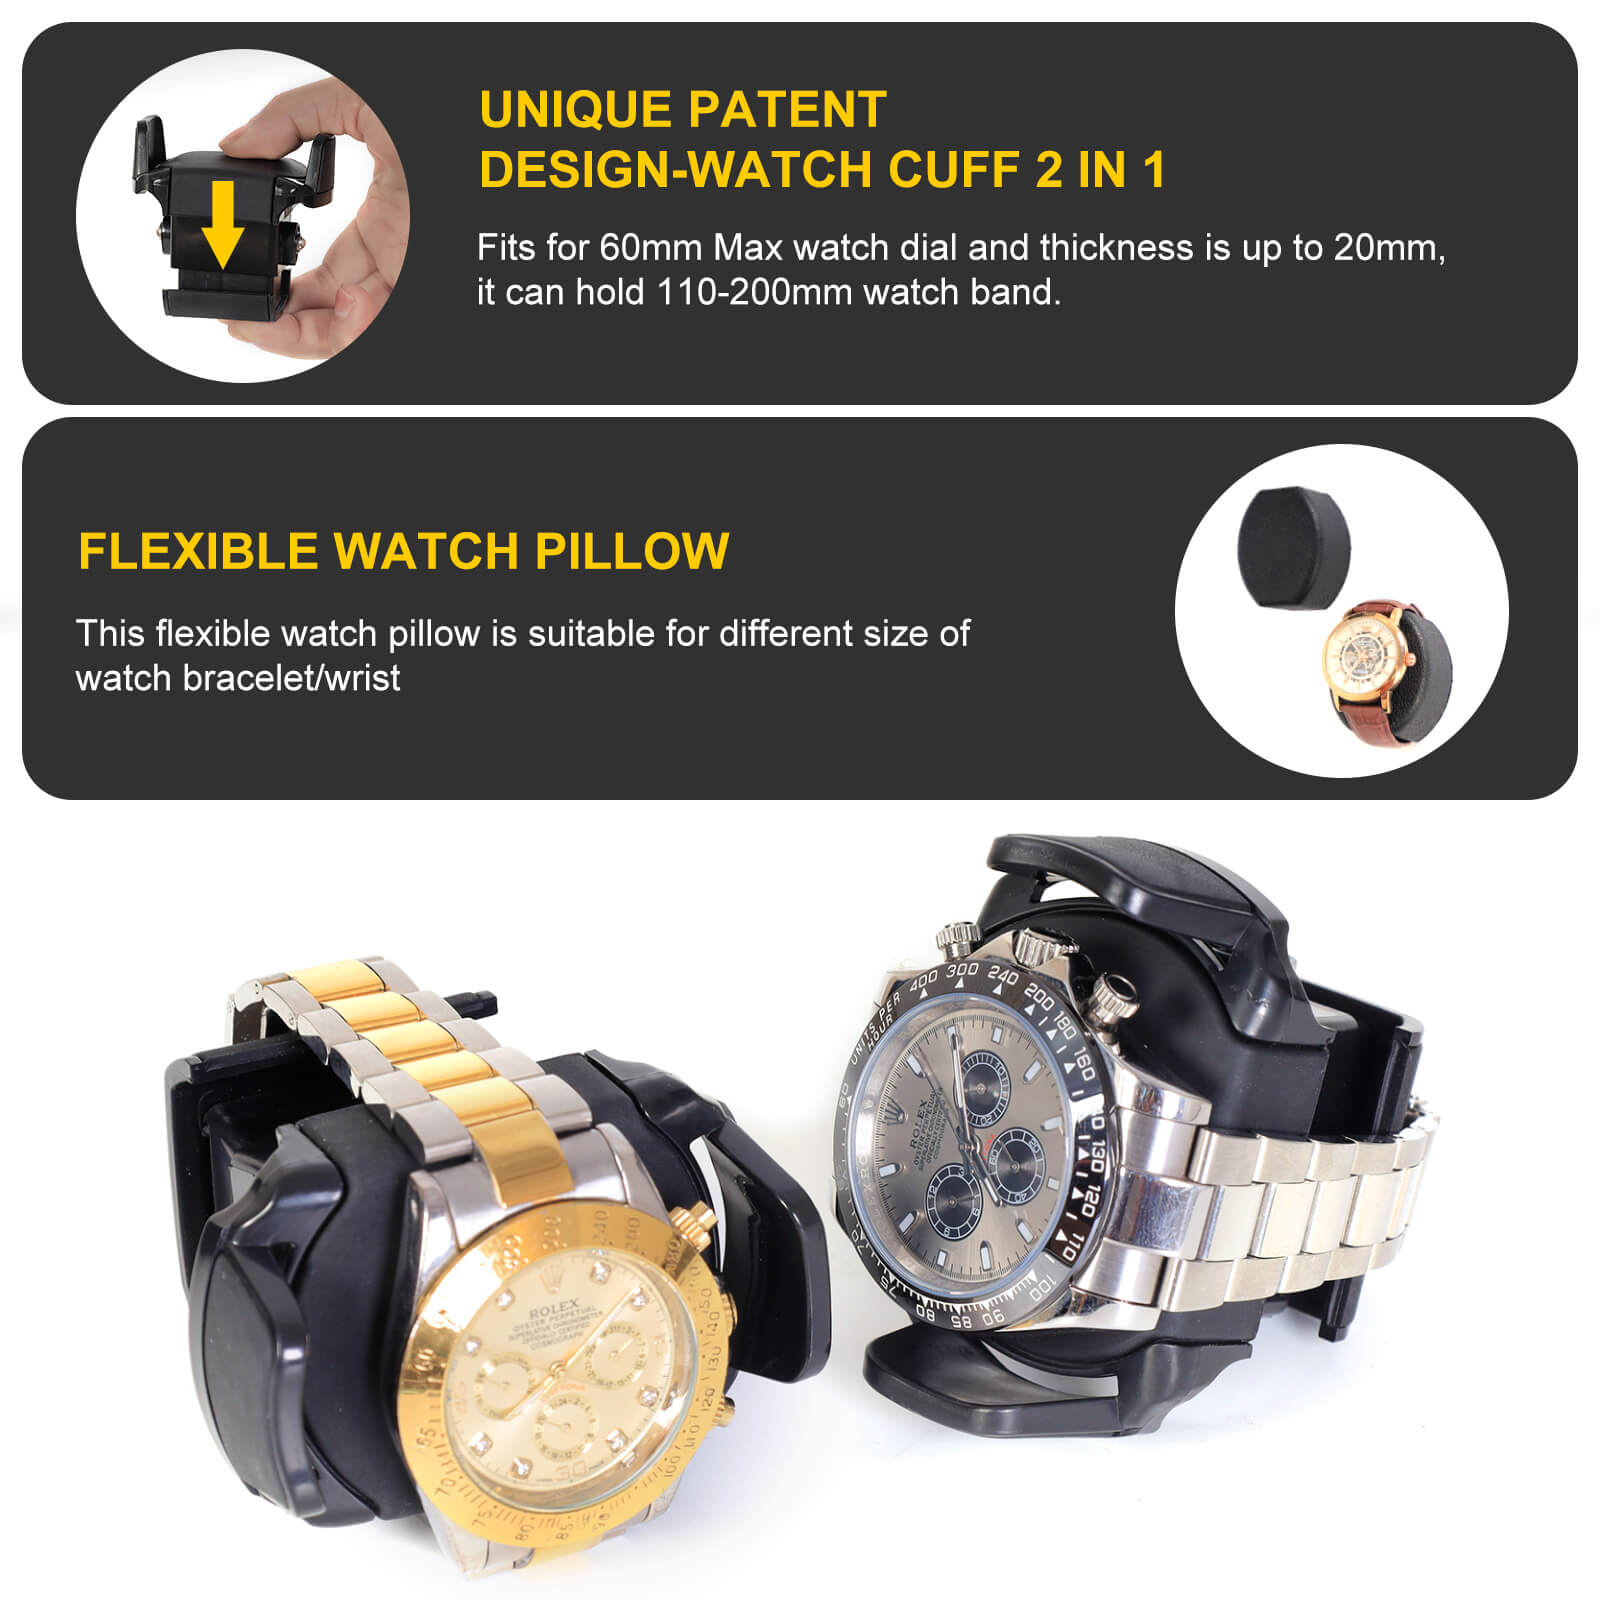 Remontoirs de montres compacts pour 8 montres avec boîtier de rangement pour 6 montres à rotation automatique - Rouge